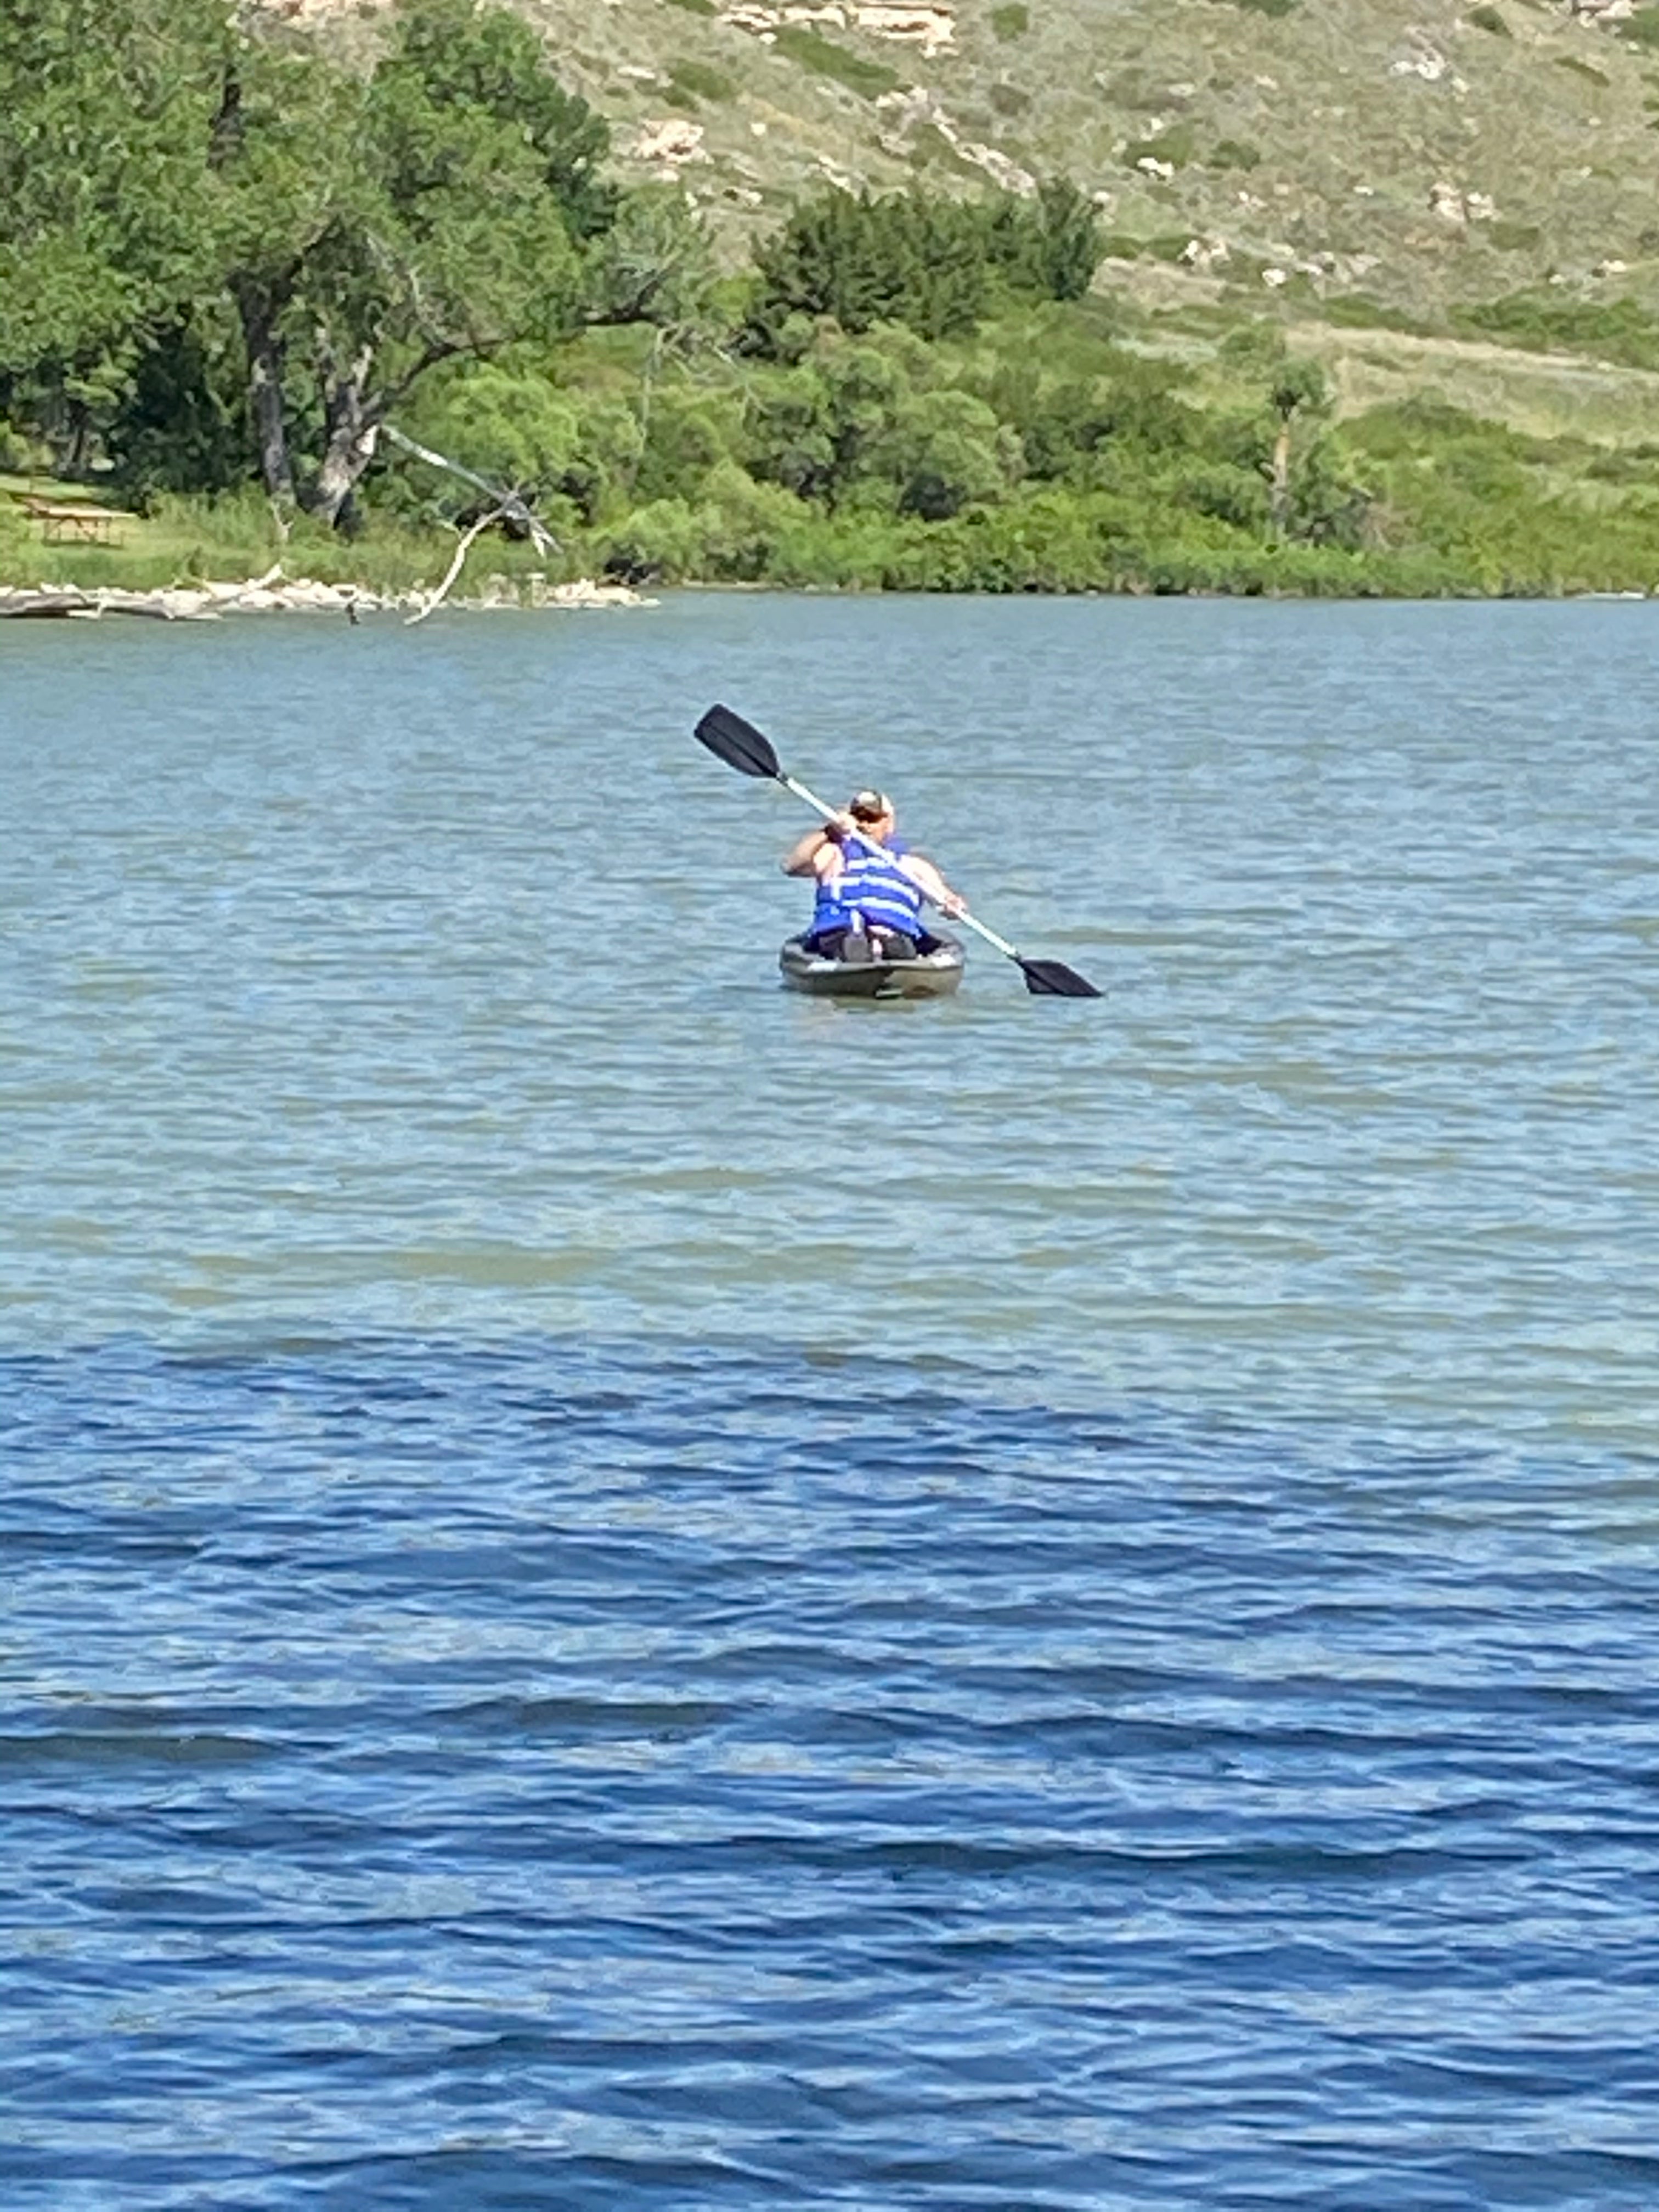 Nice lake to kayak